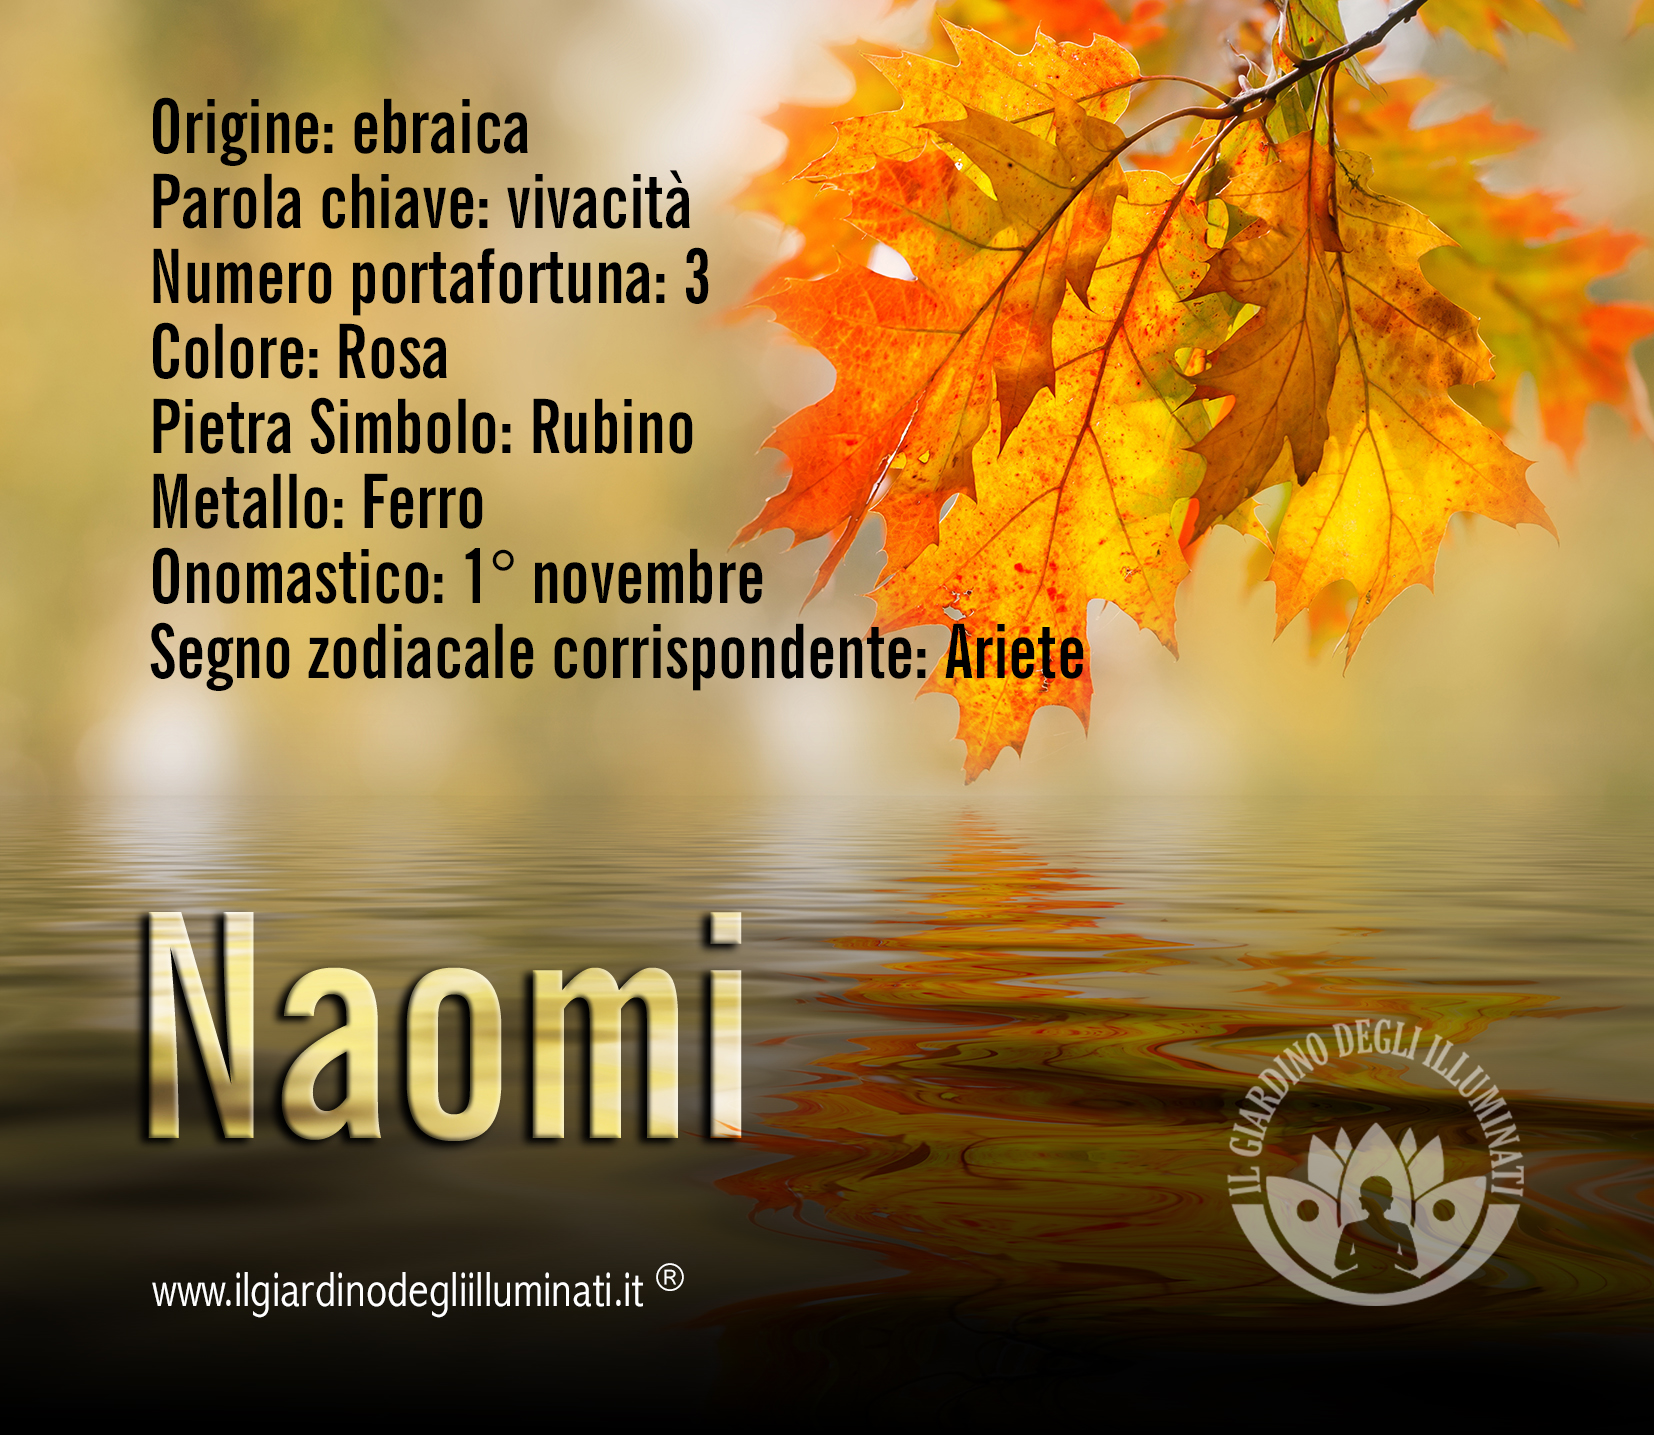 Naomi significato e origine